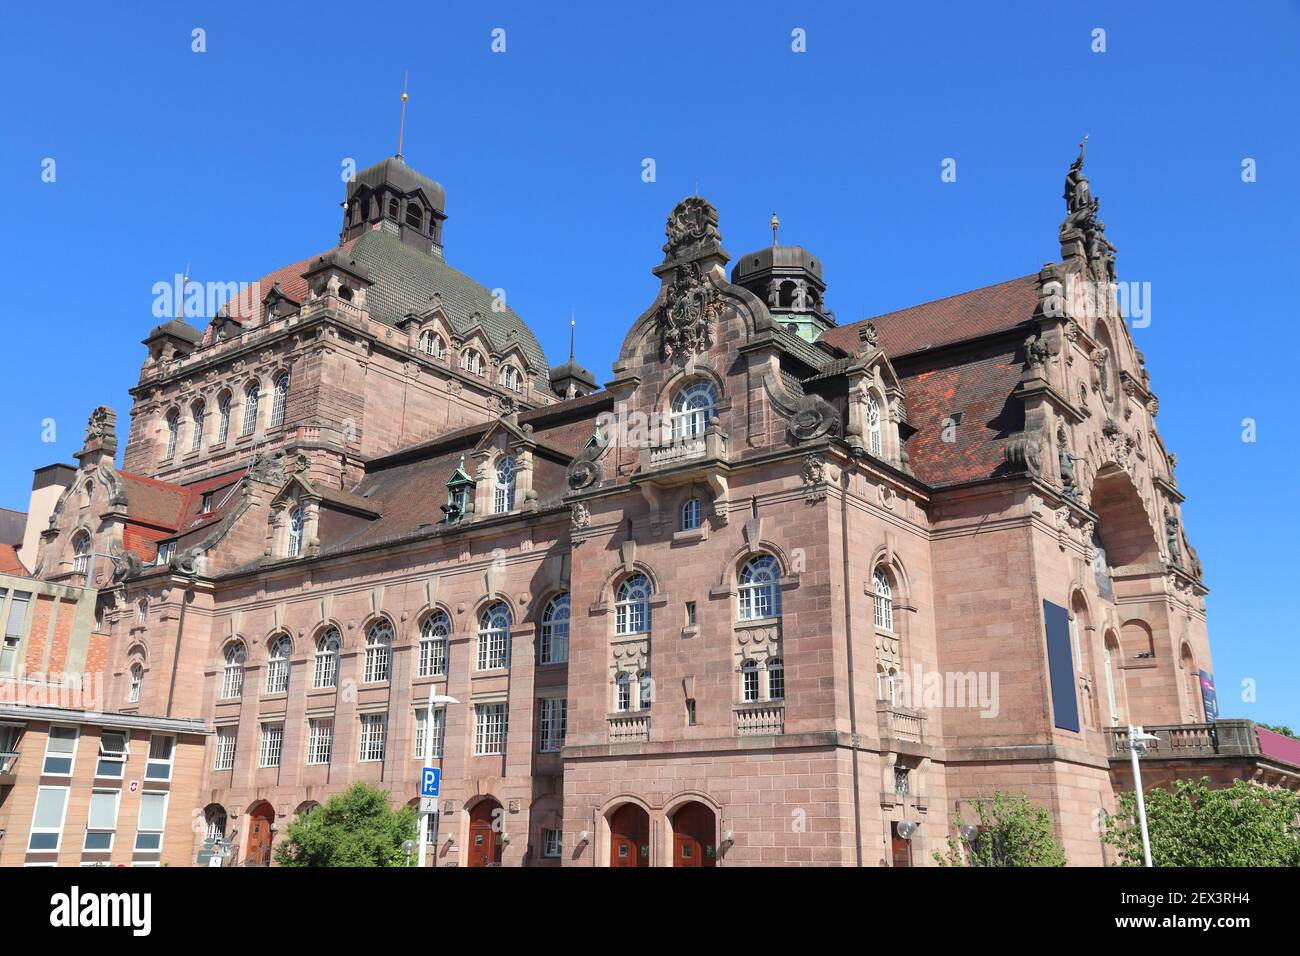 Nuremberg, Alemania. Opernhaus (Opera House) - edificio cultural. Alemania. Foto de stock